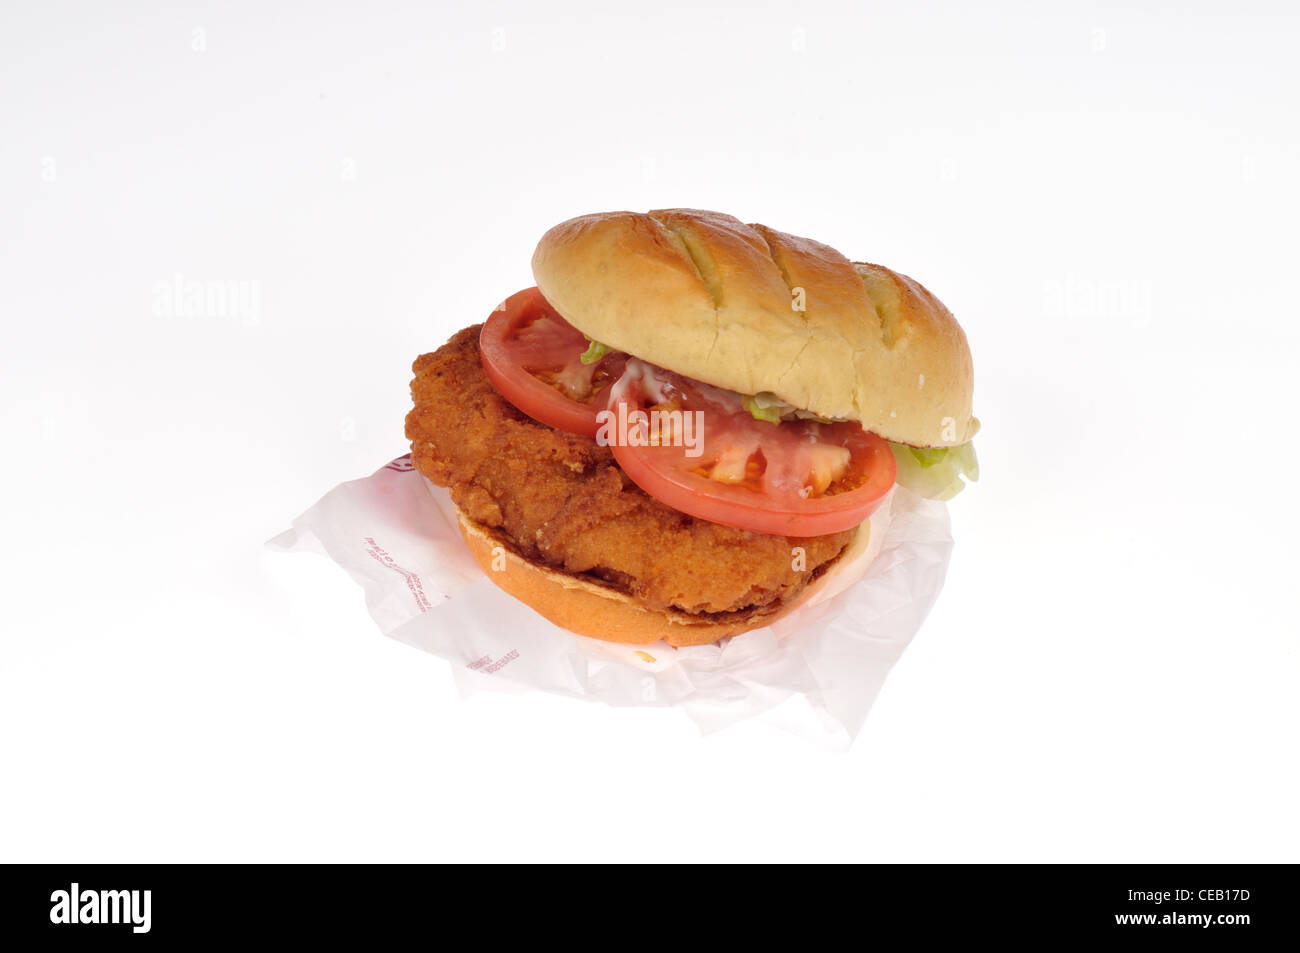 Burger King tendercrisp chicken sandwich con lechuga y tomate y rollo artesanal sobre fondo blanco recorte USA. Foto de stock